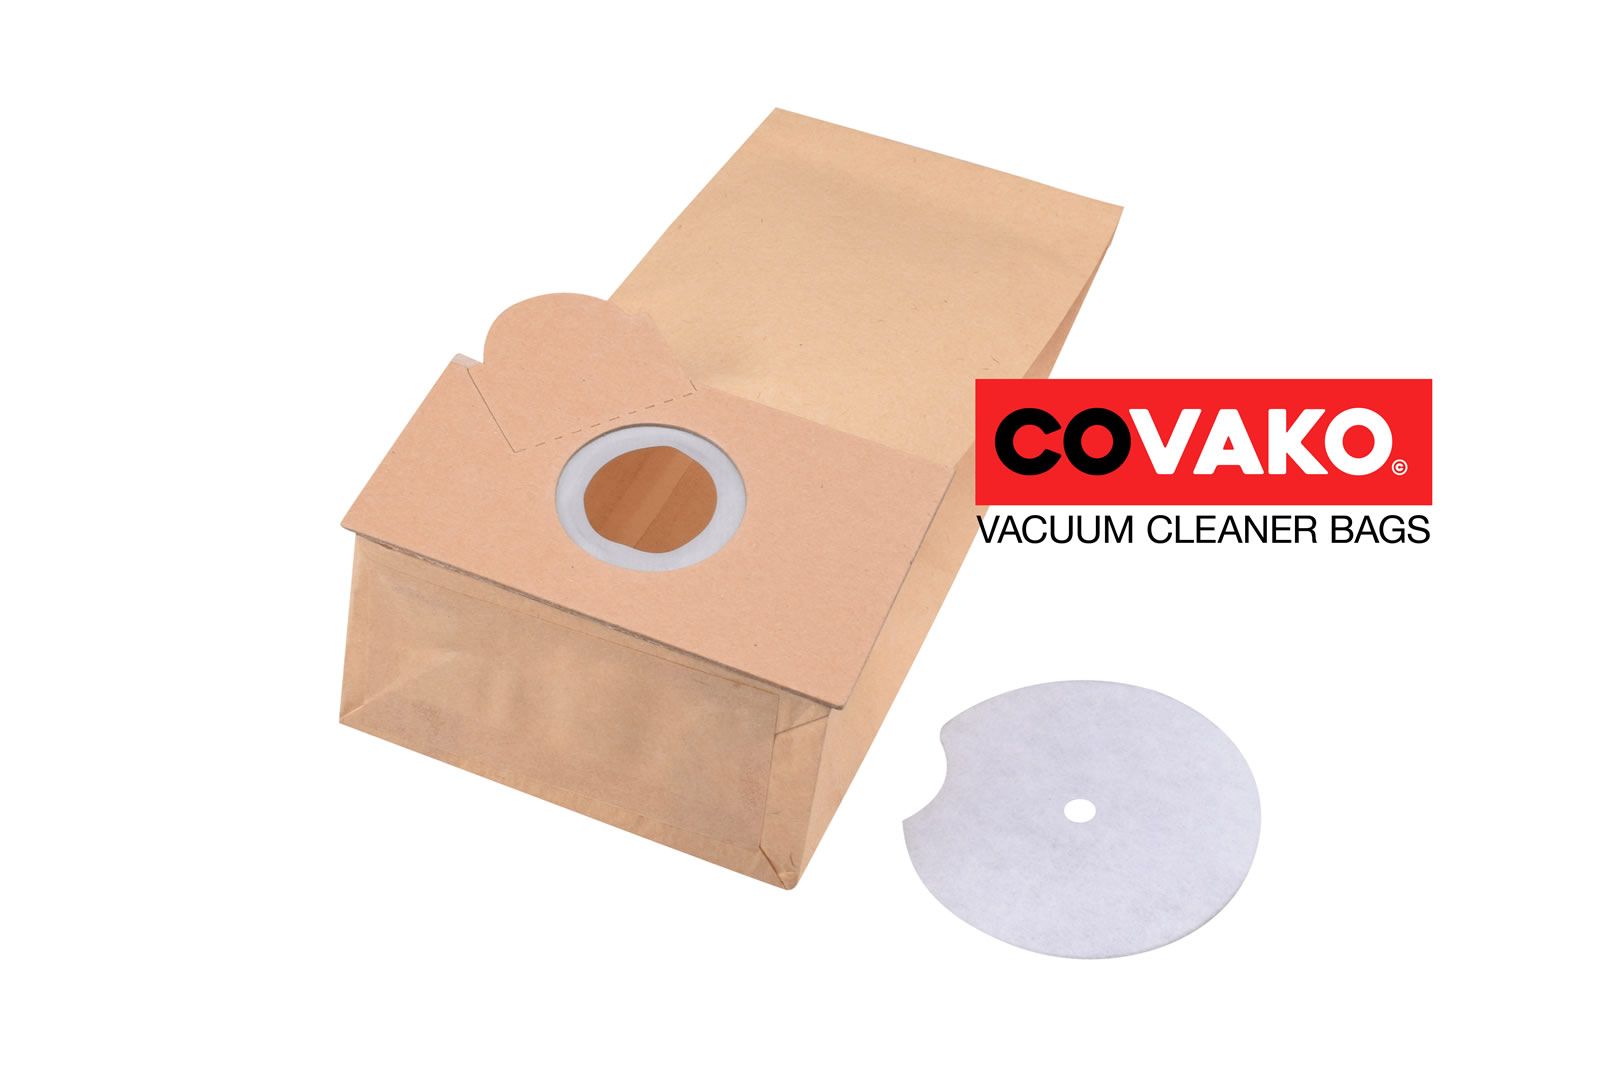 Fakir Combi 17-30 / Paper - Fakir vacuum cleaner bags